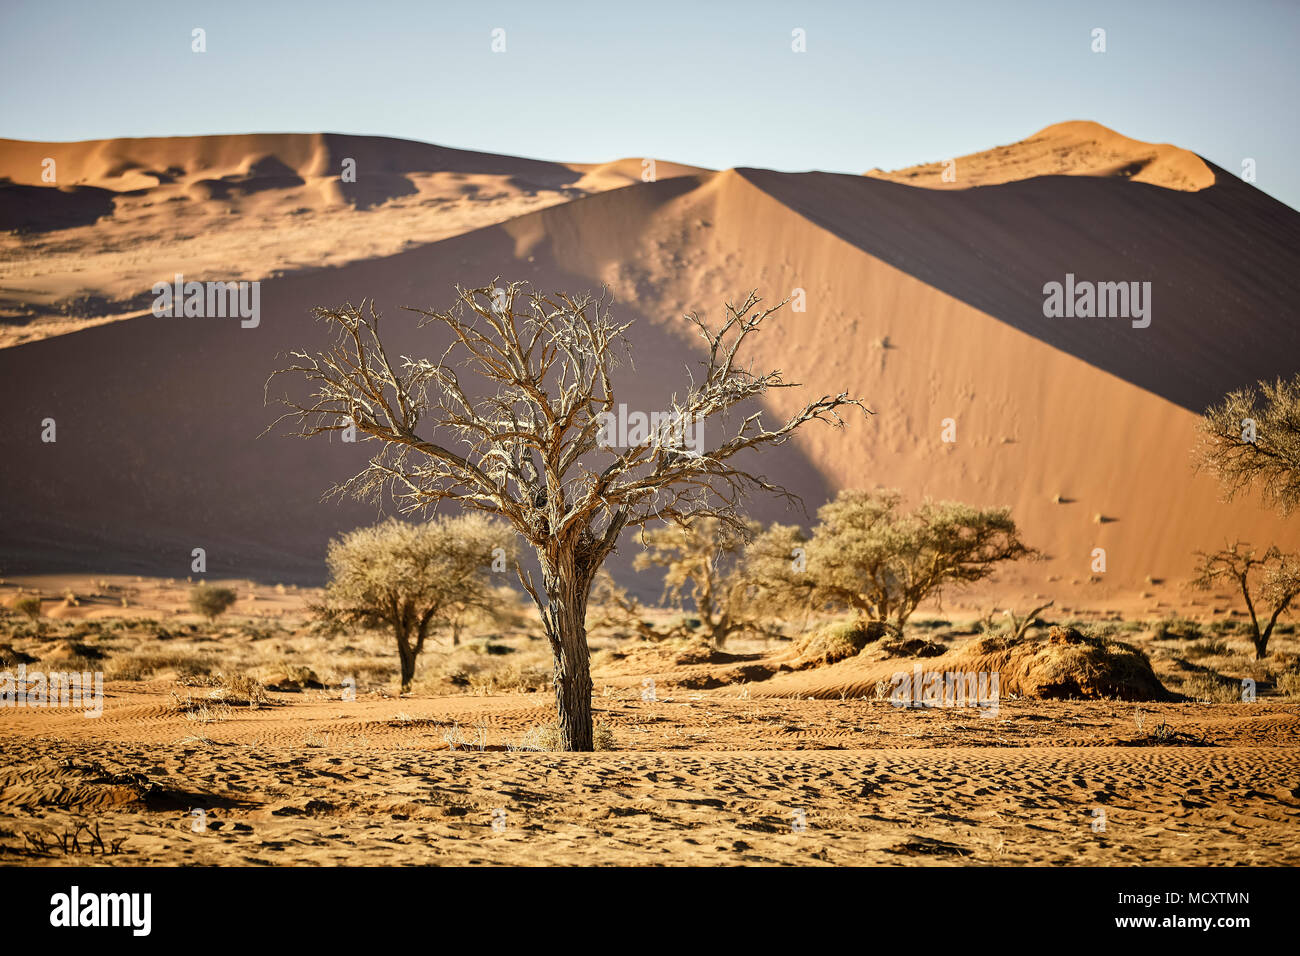 Dead camelthorn tree (Vachellia erioloba) in front of sand dunes, Sossusvlei, Namib Desert, Namib-Naukluft National Park Stock Photo